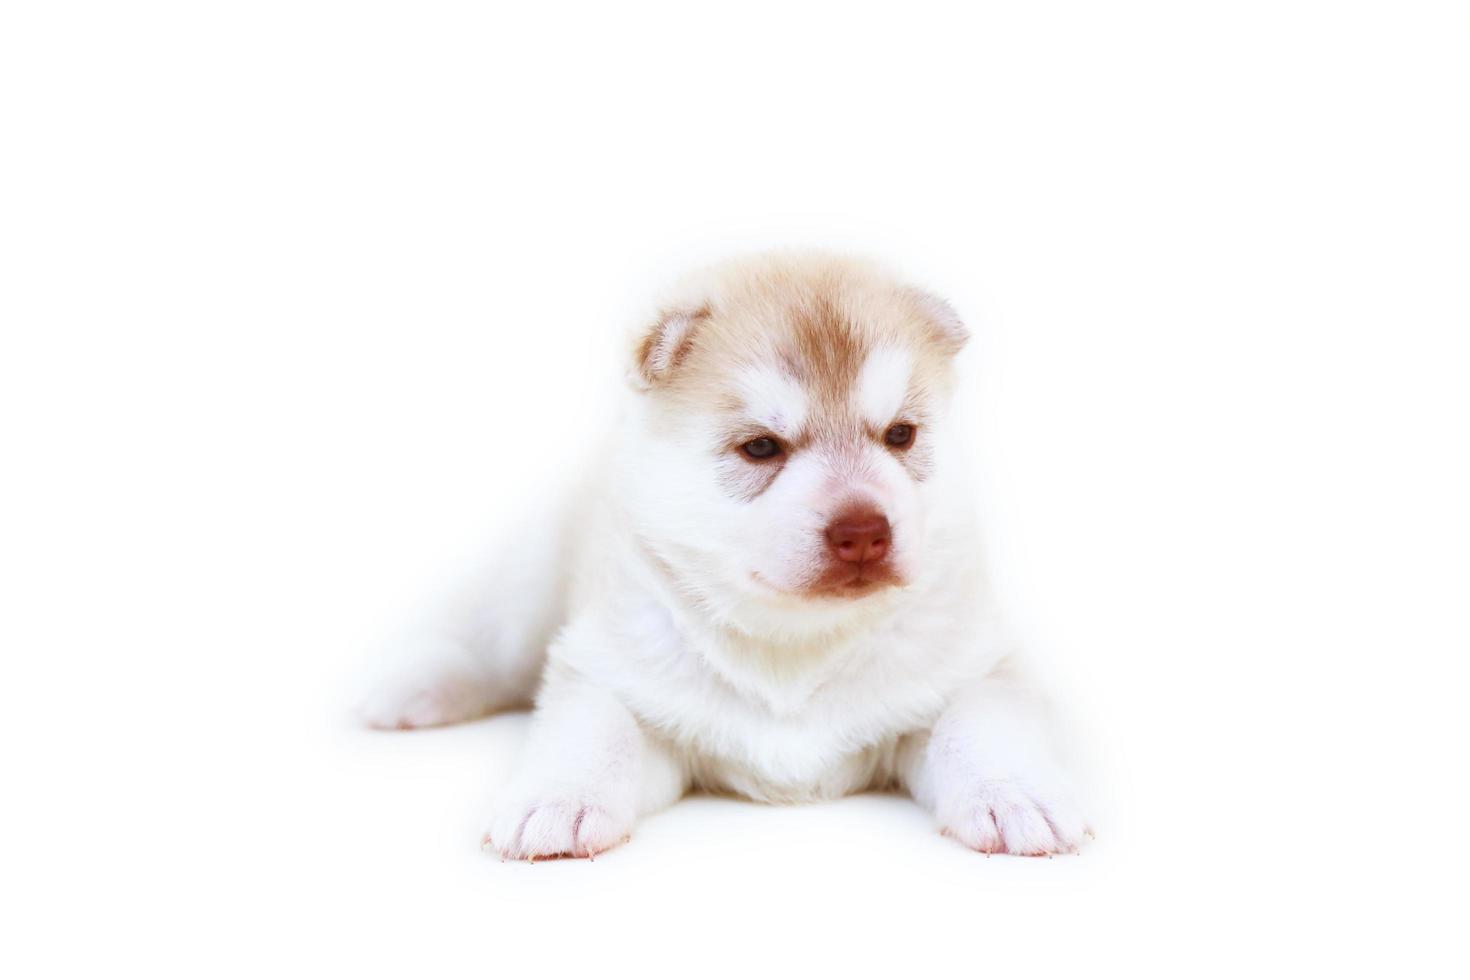 recém-nascido filhote de cachorro husky siberiano luz cores vermelhas e brancas deitado no fundo branco. filhote de cachorro fofo recém-nascido isolado no fundo branco. foto